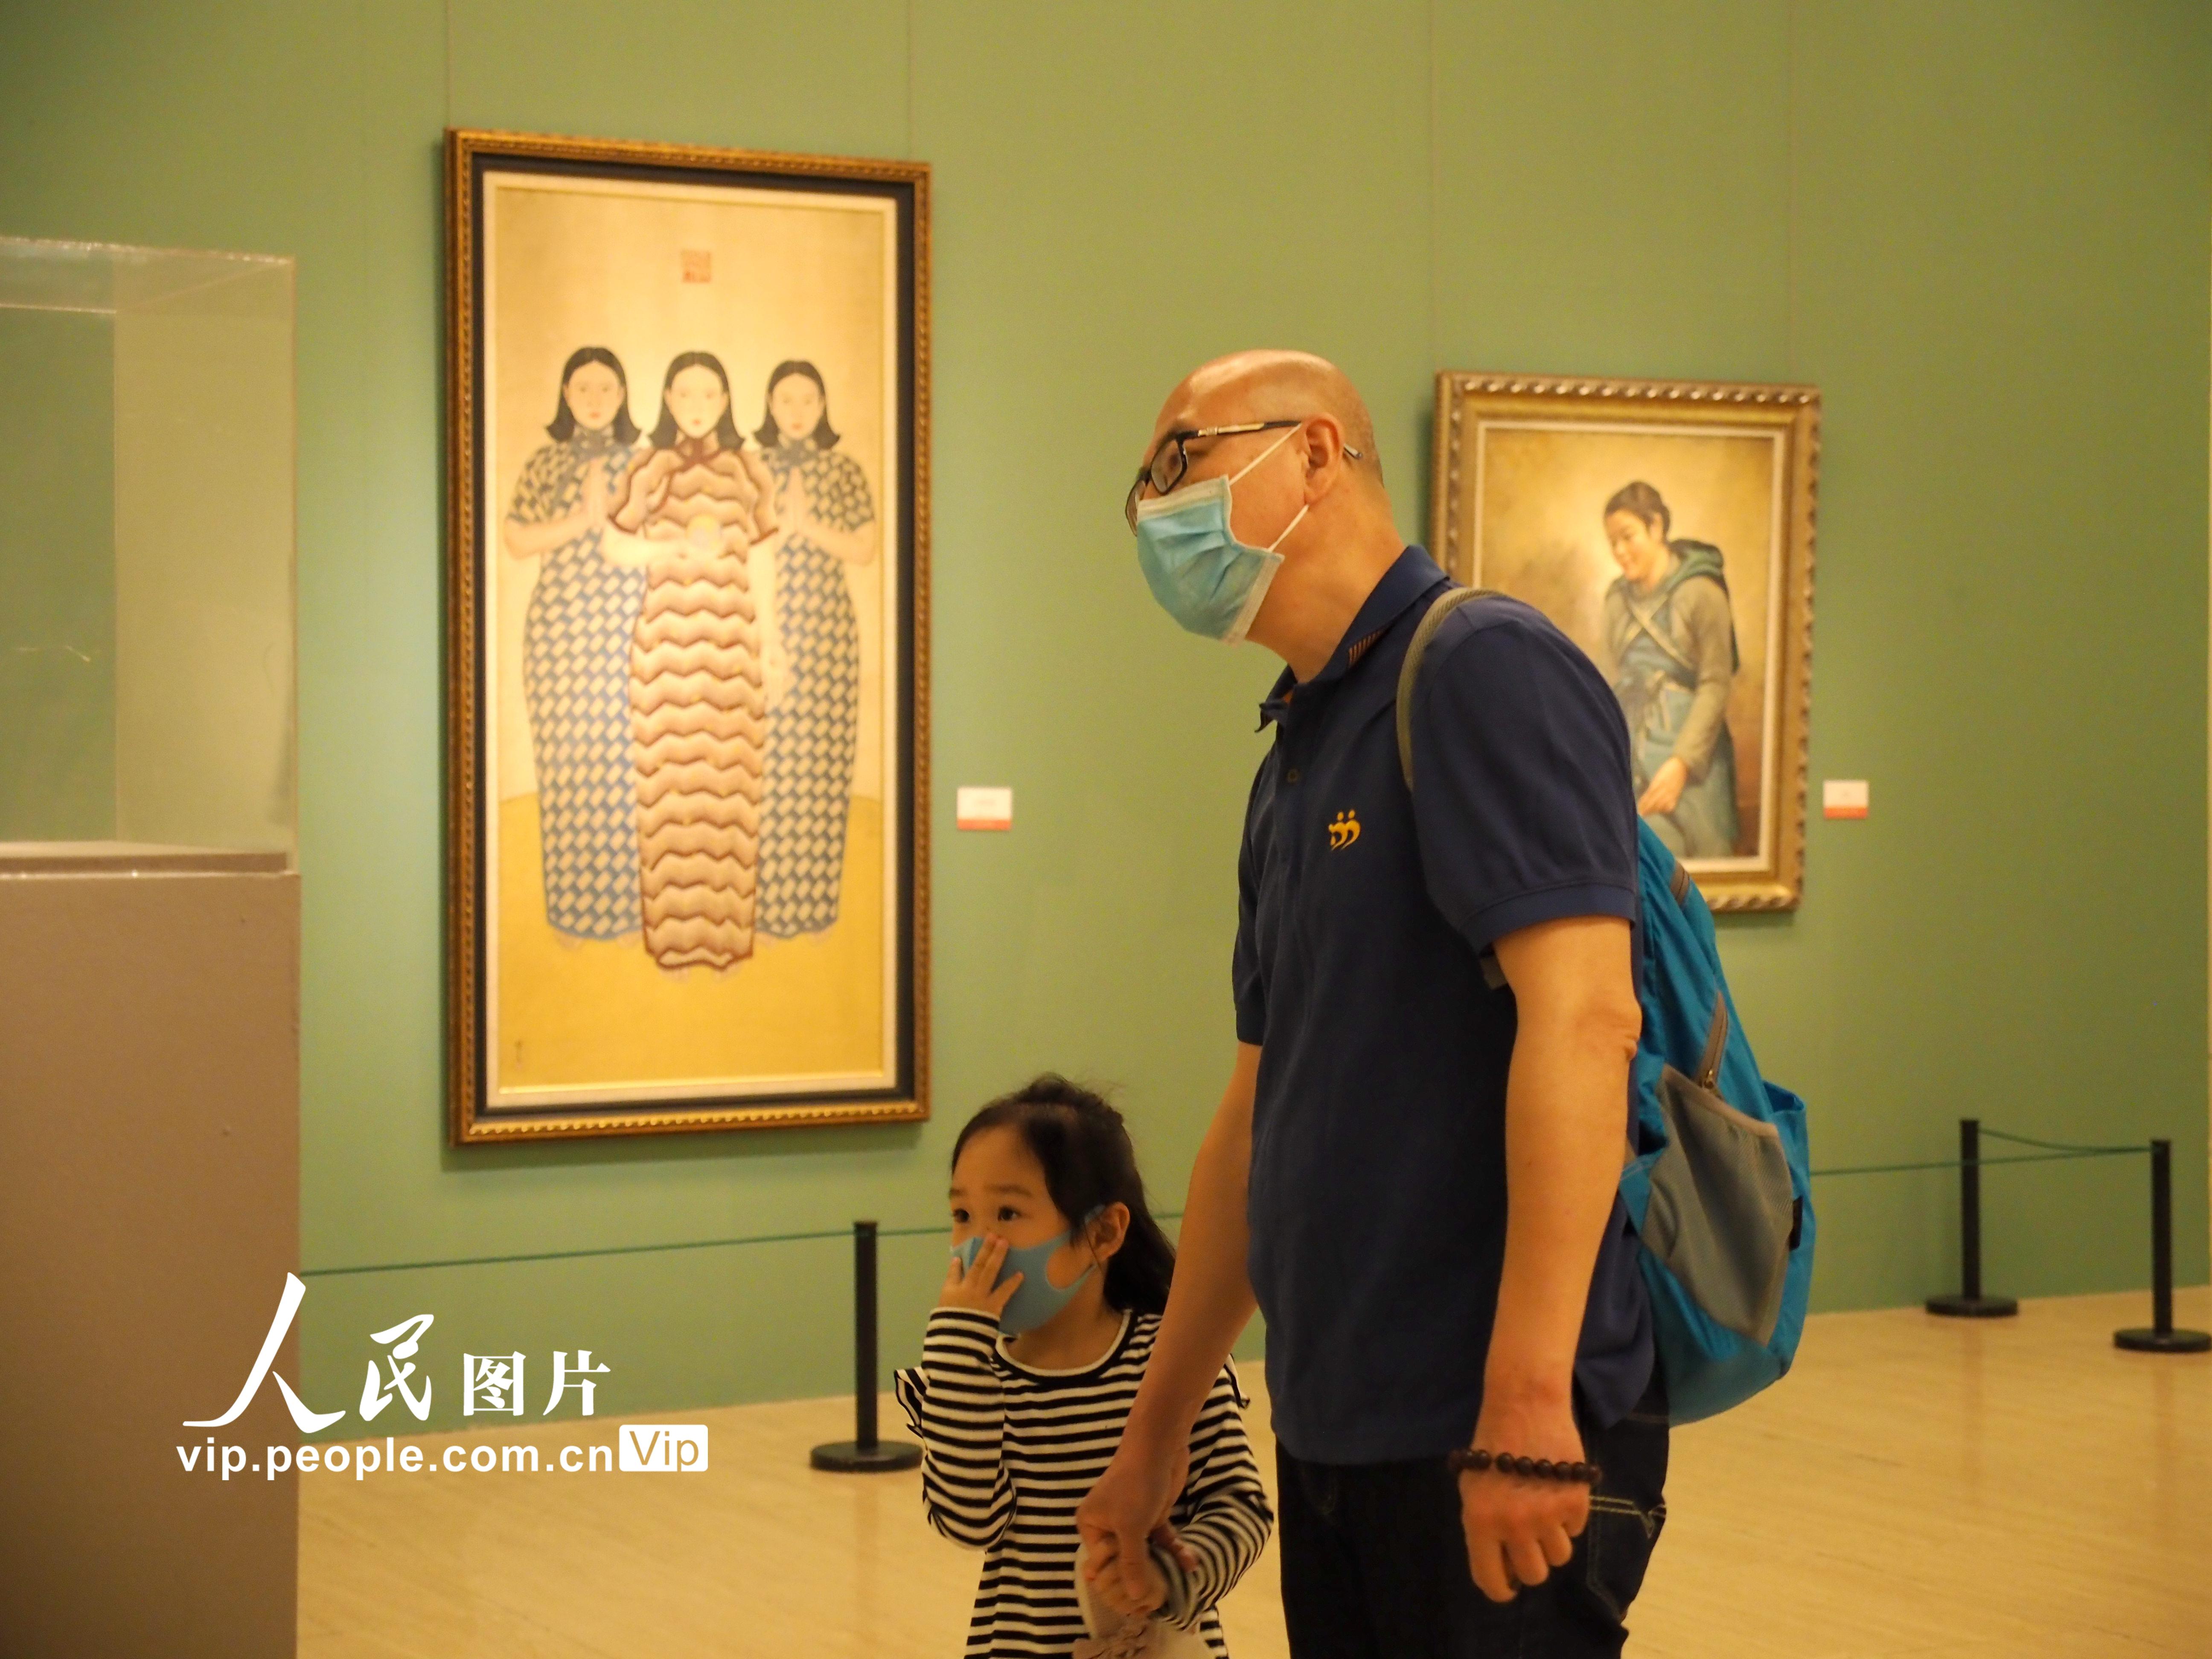 中国美术馆有序开放 每日限额500人